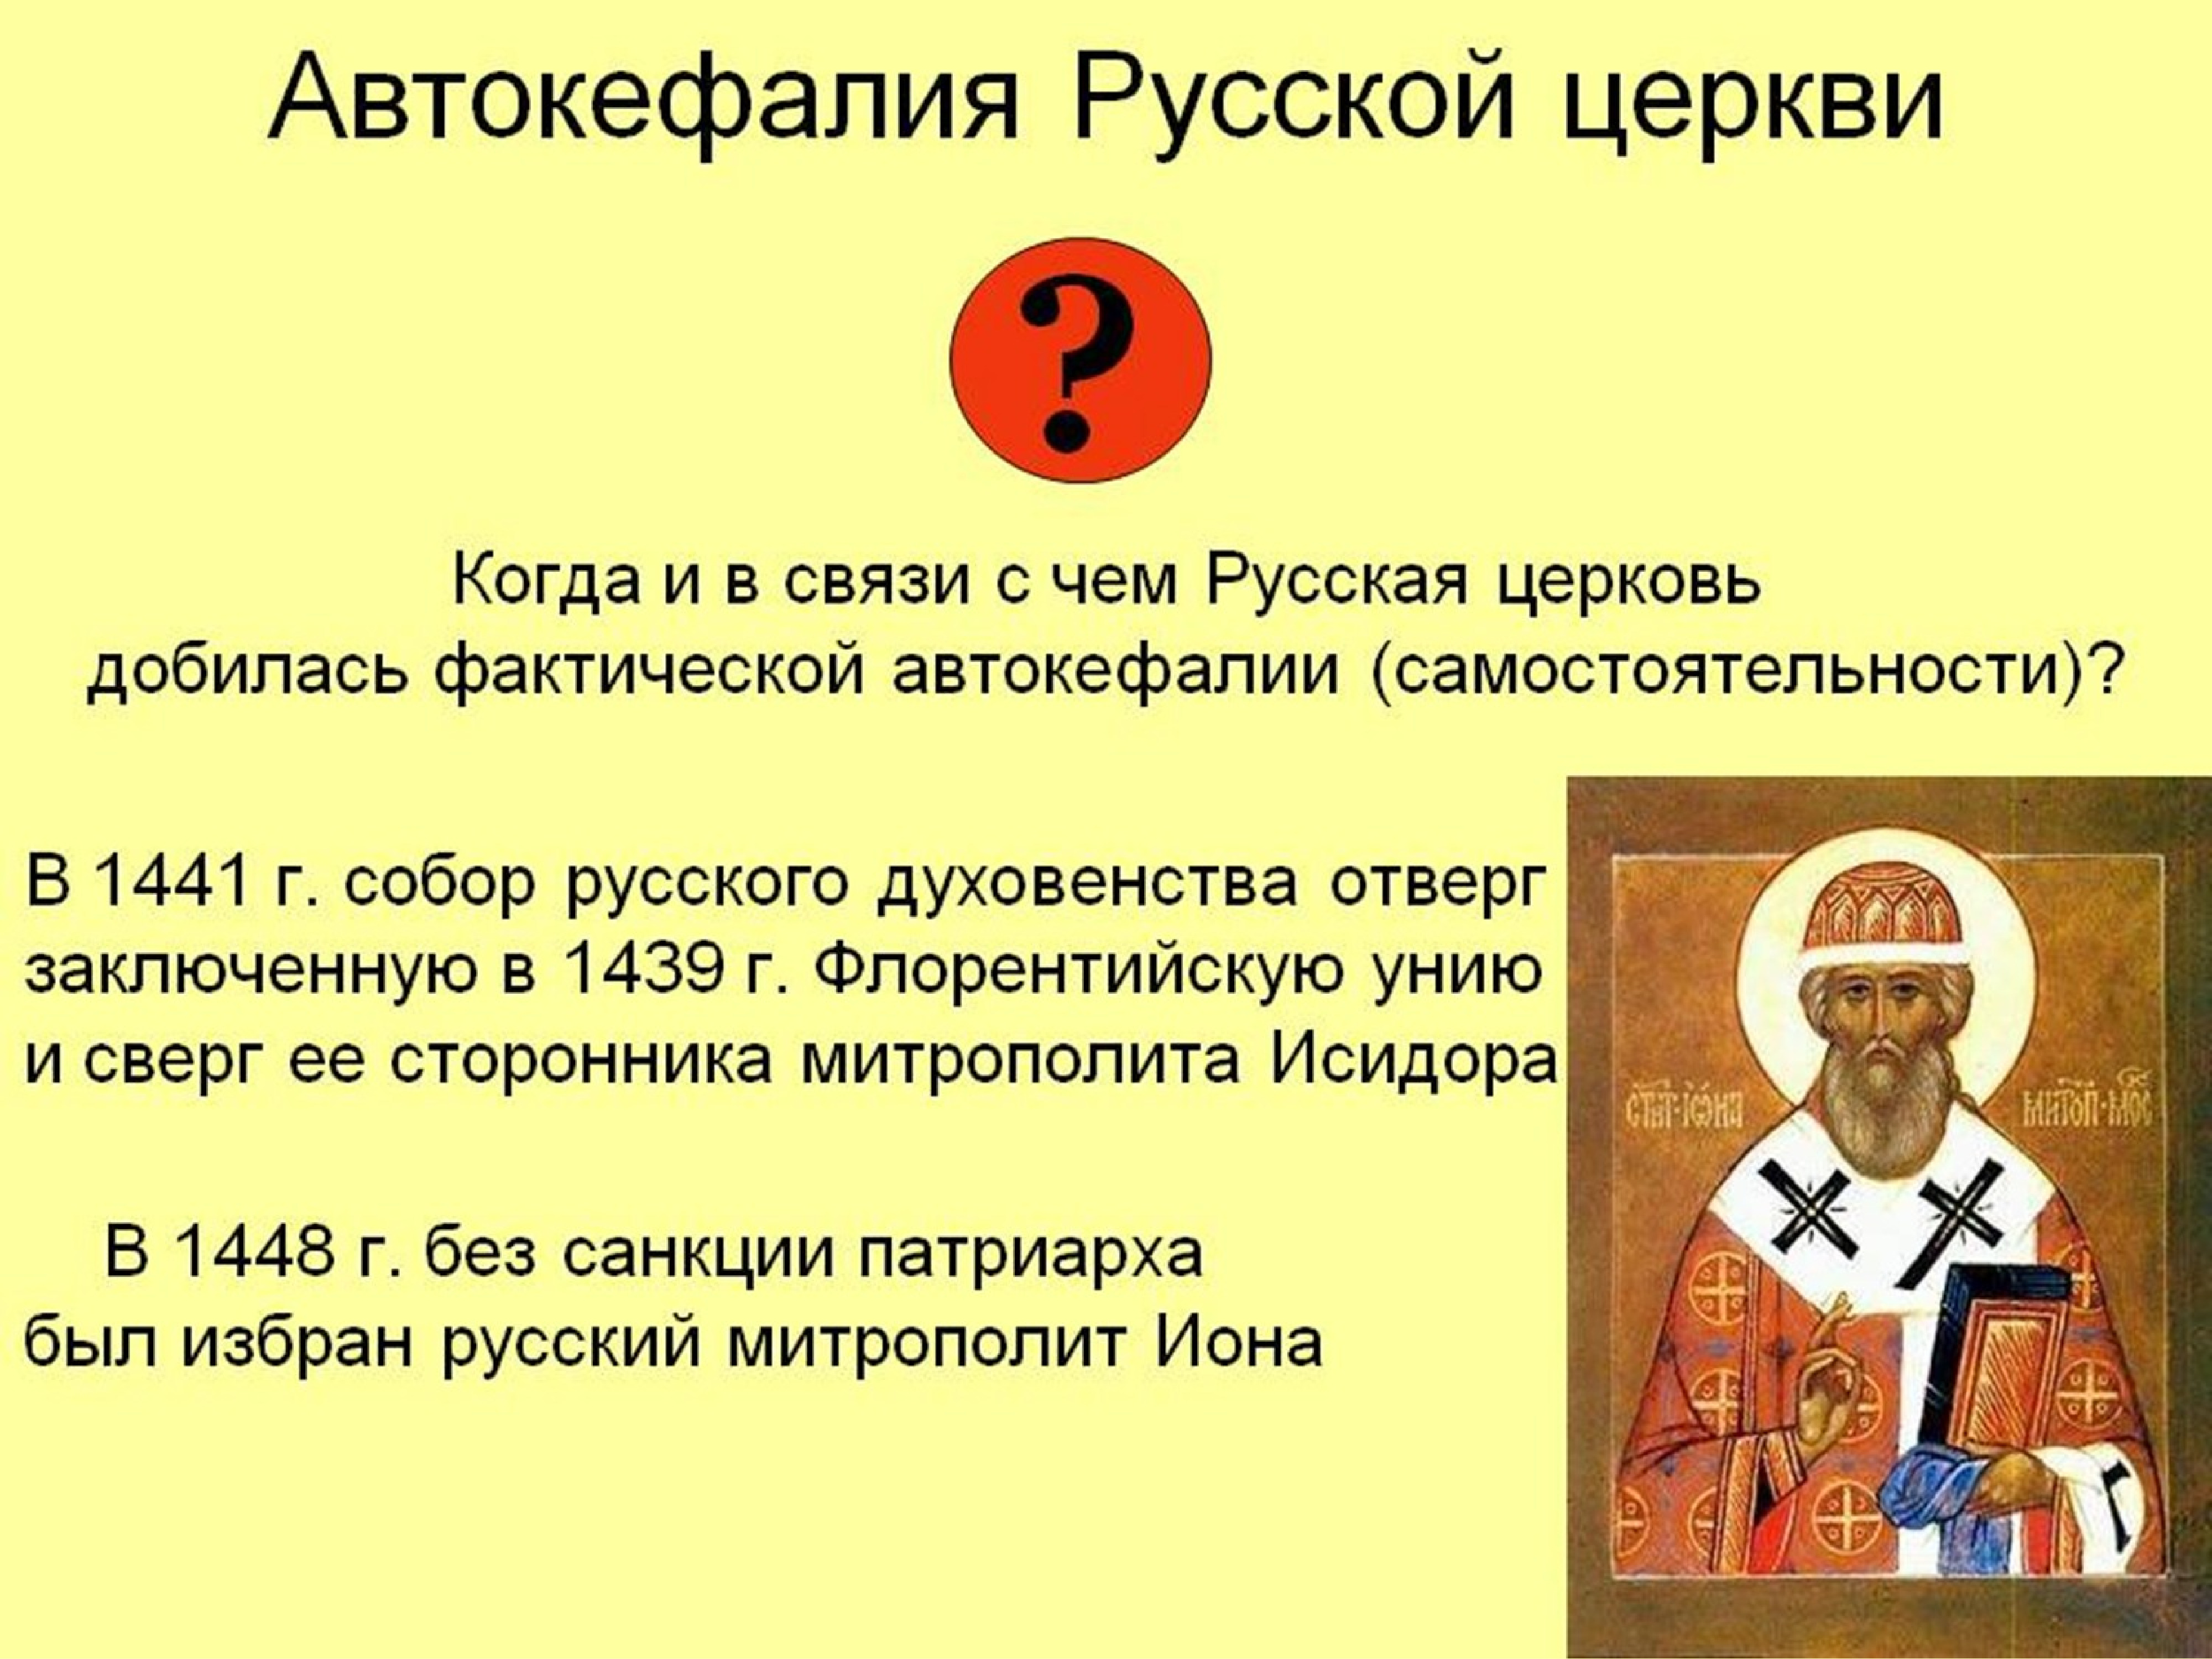 Автокефалия русской православной церкви 16 век